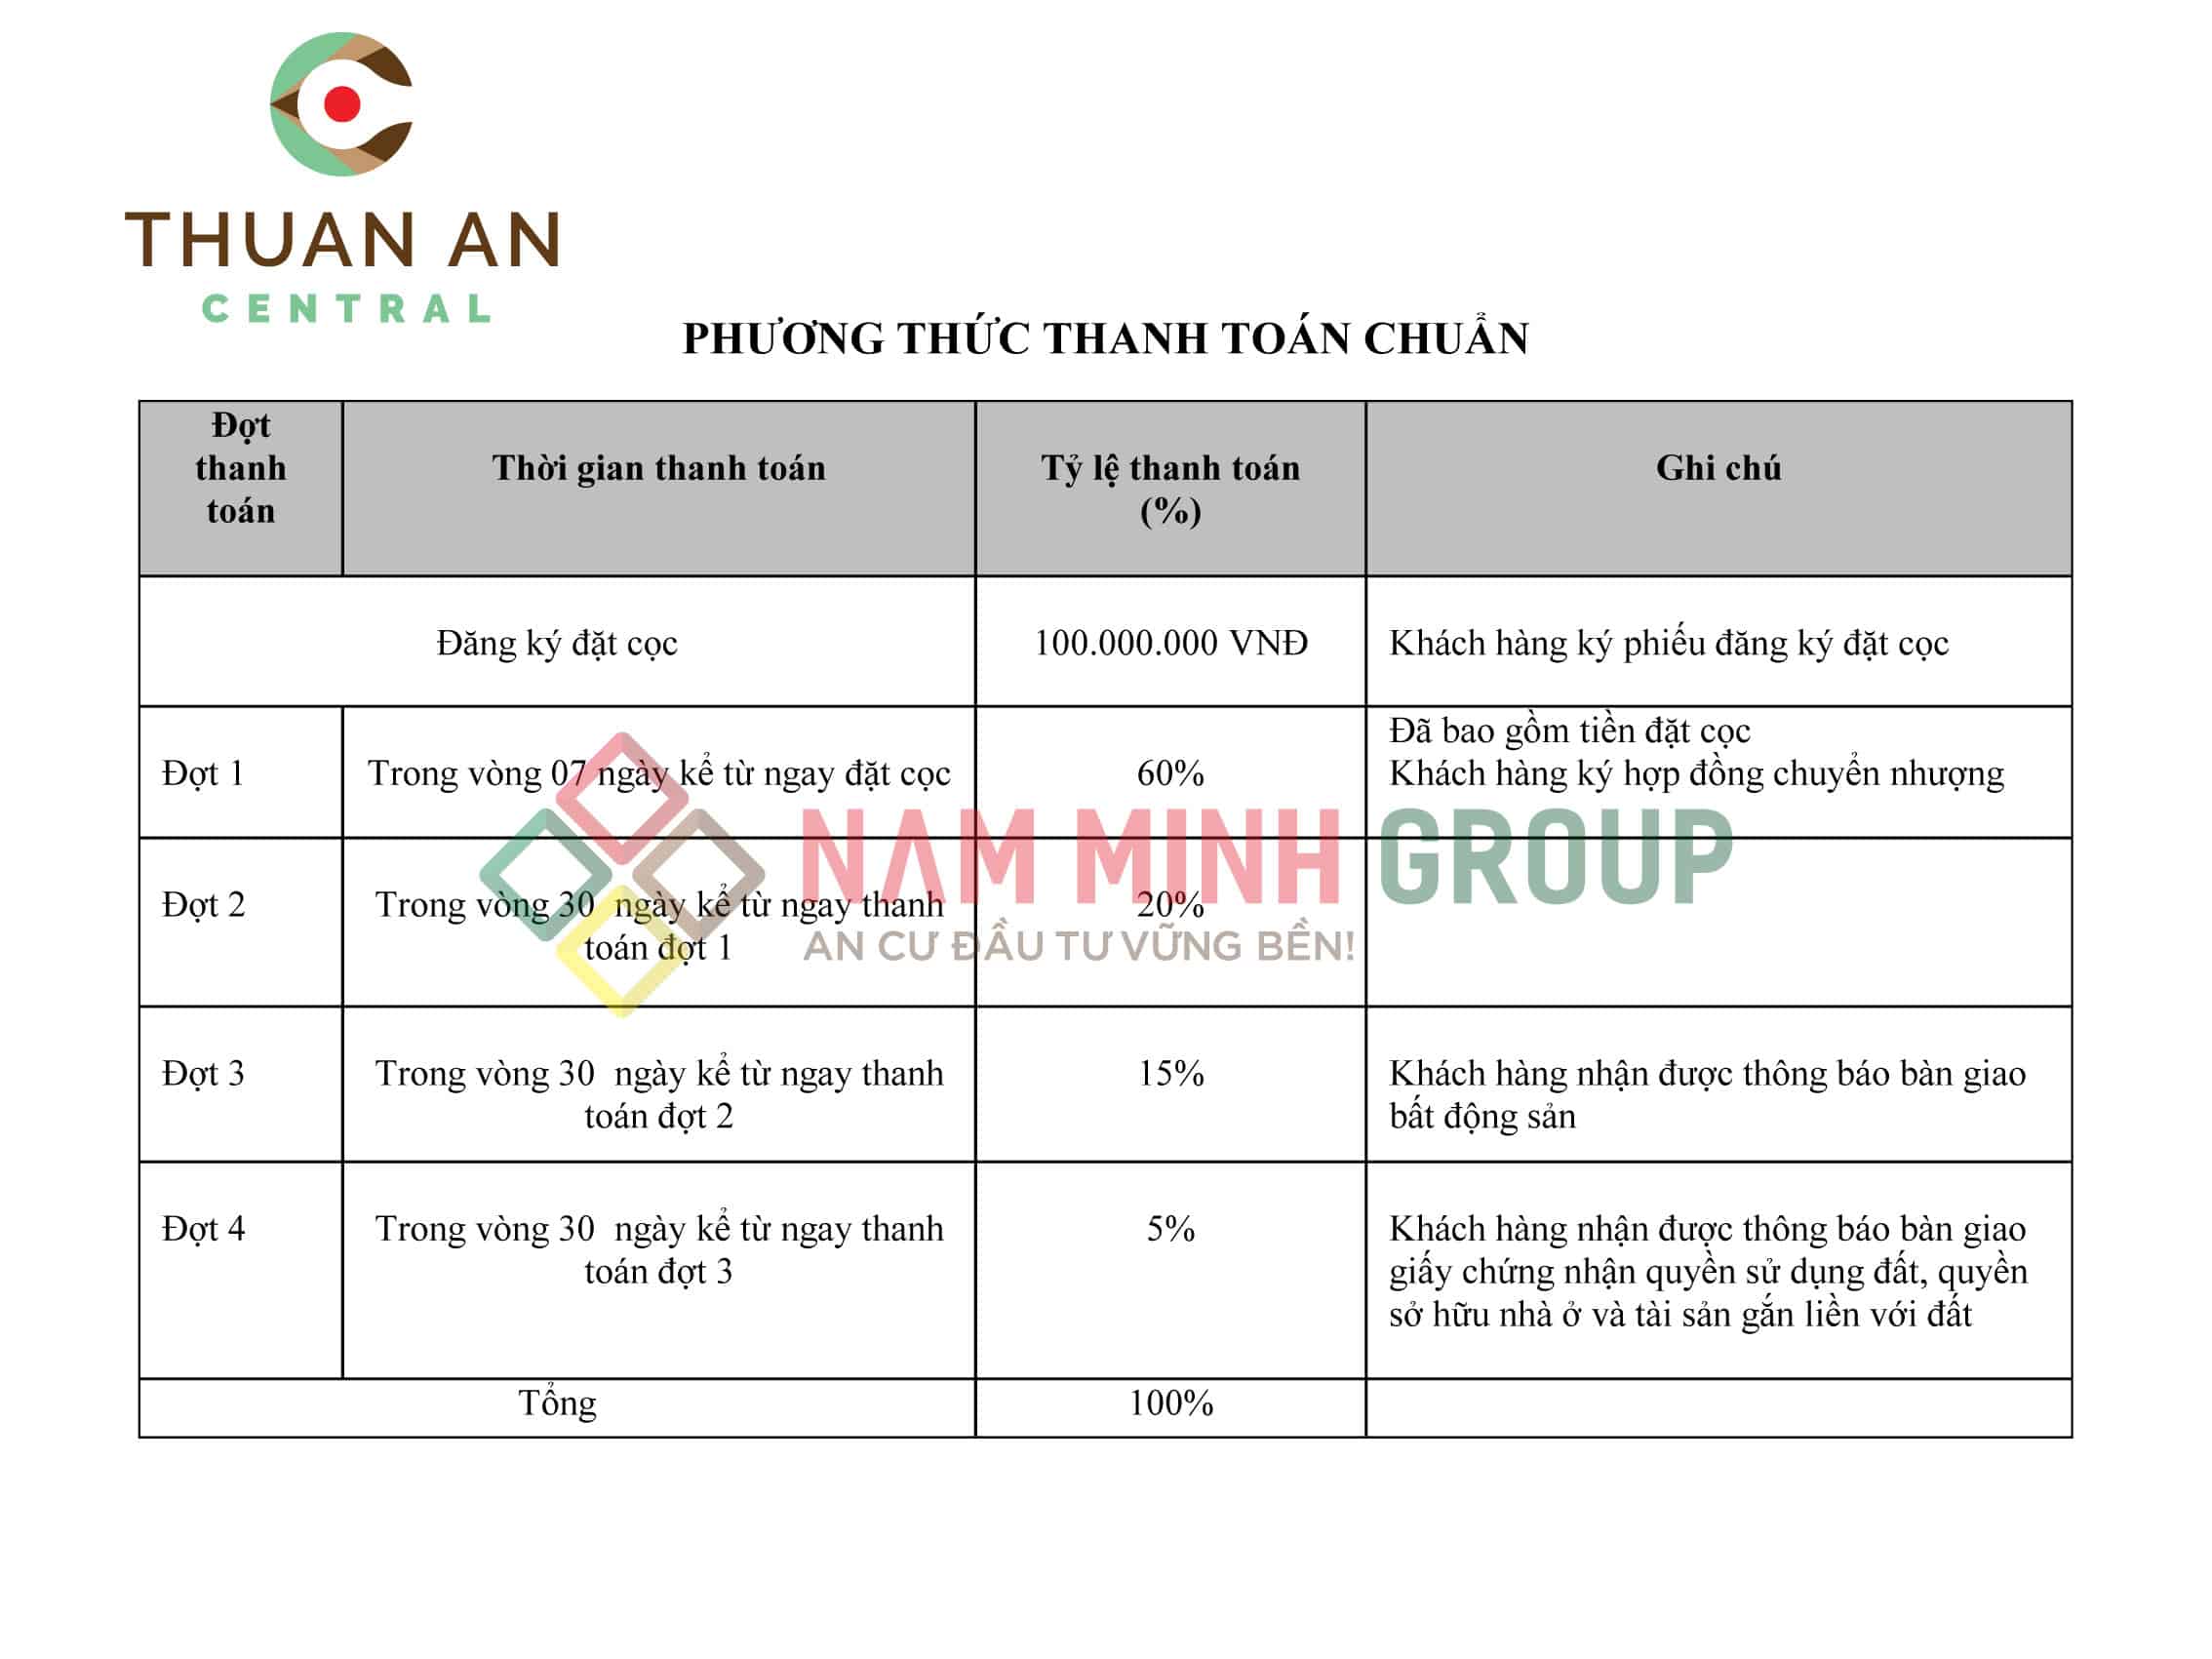 Phường thức thanh toán chuẩn Thuận An Central